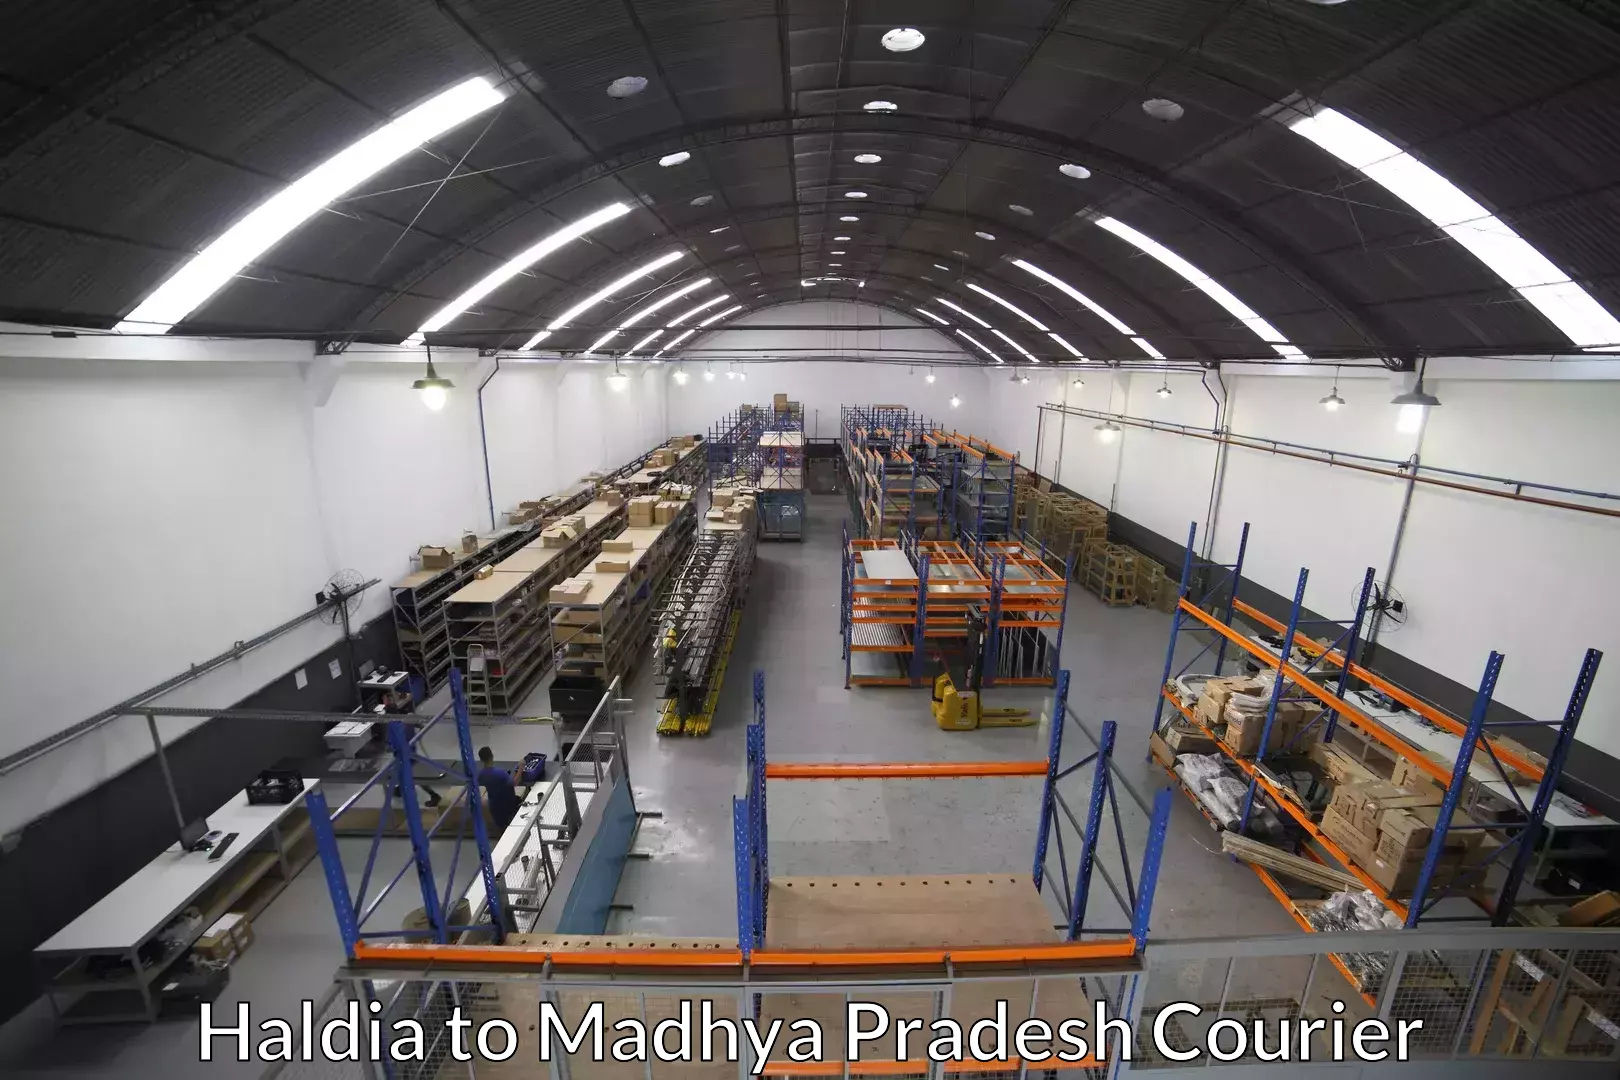 Trusted moving company Haldia to Garh Rewa